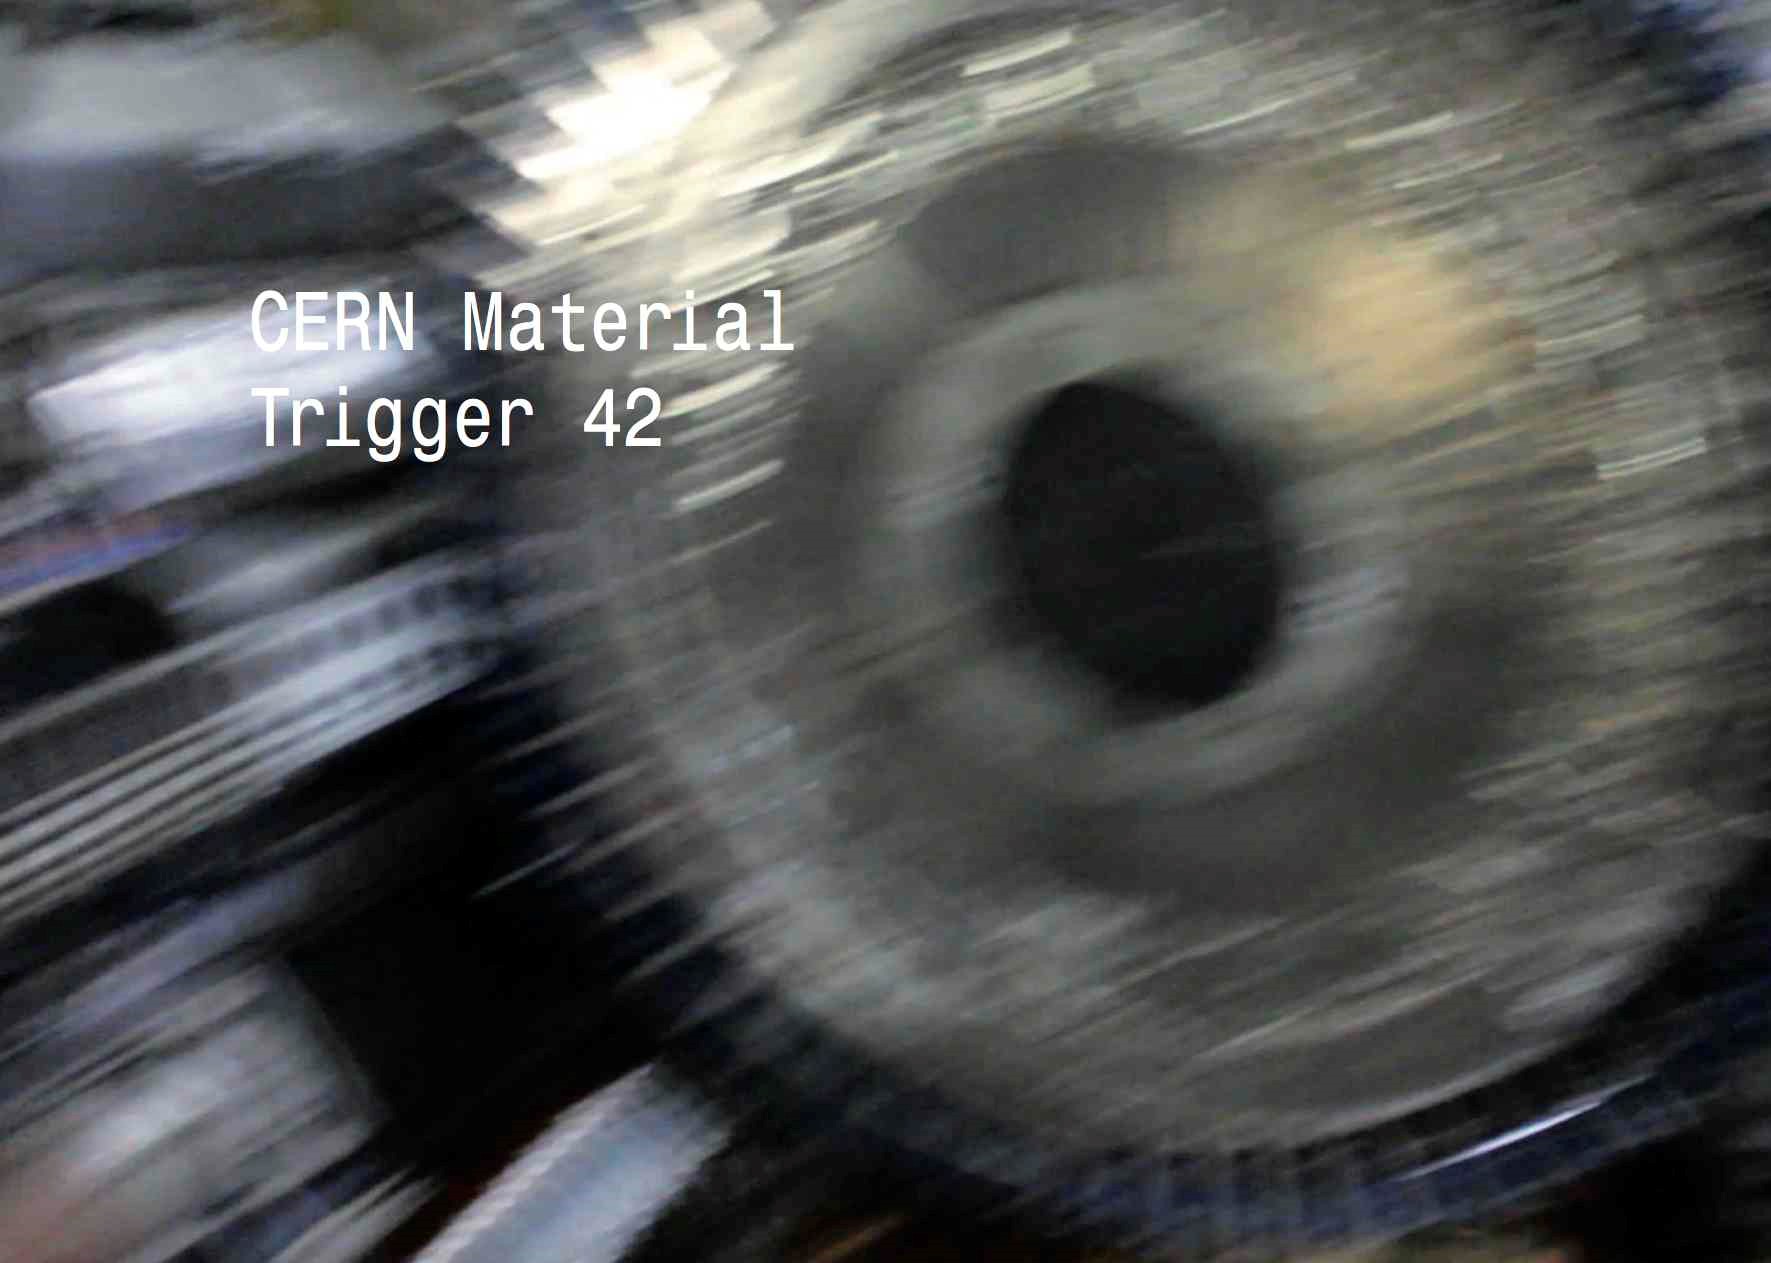 CERN MATERIAL TRIGGER 42 